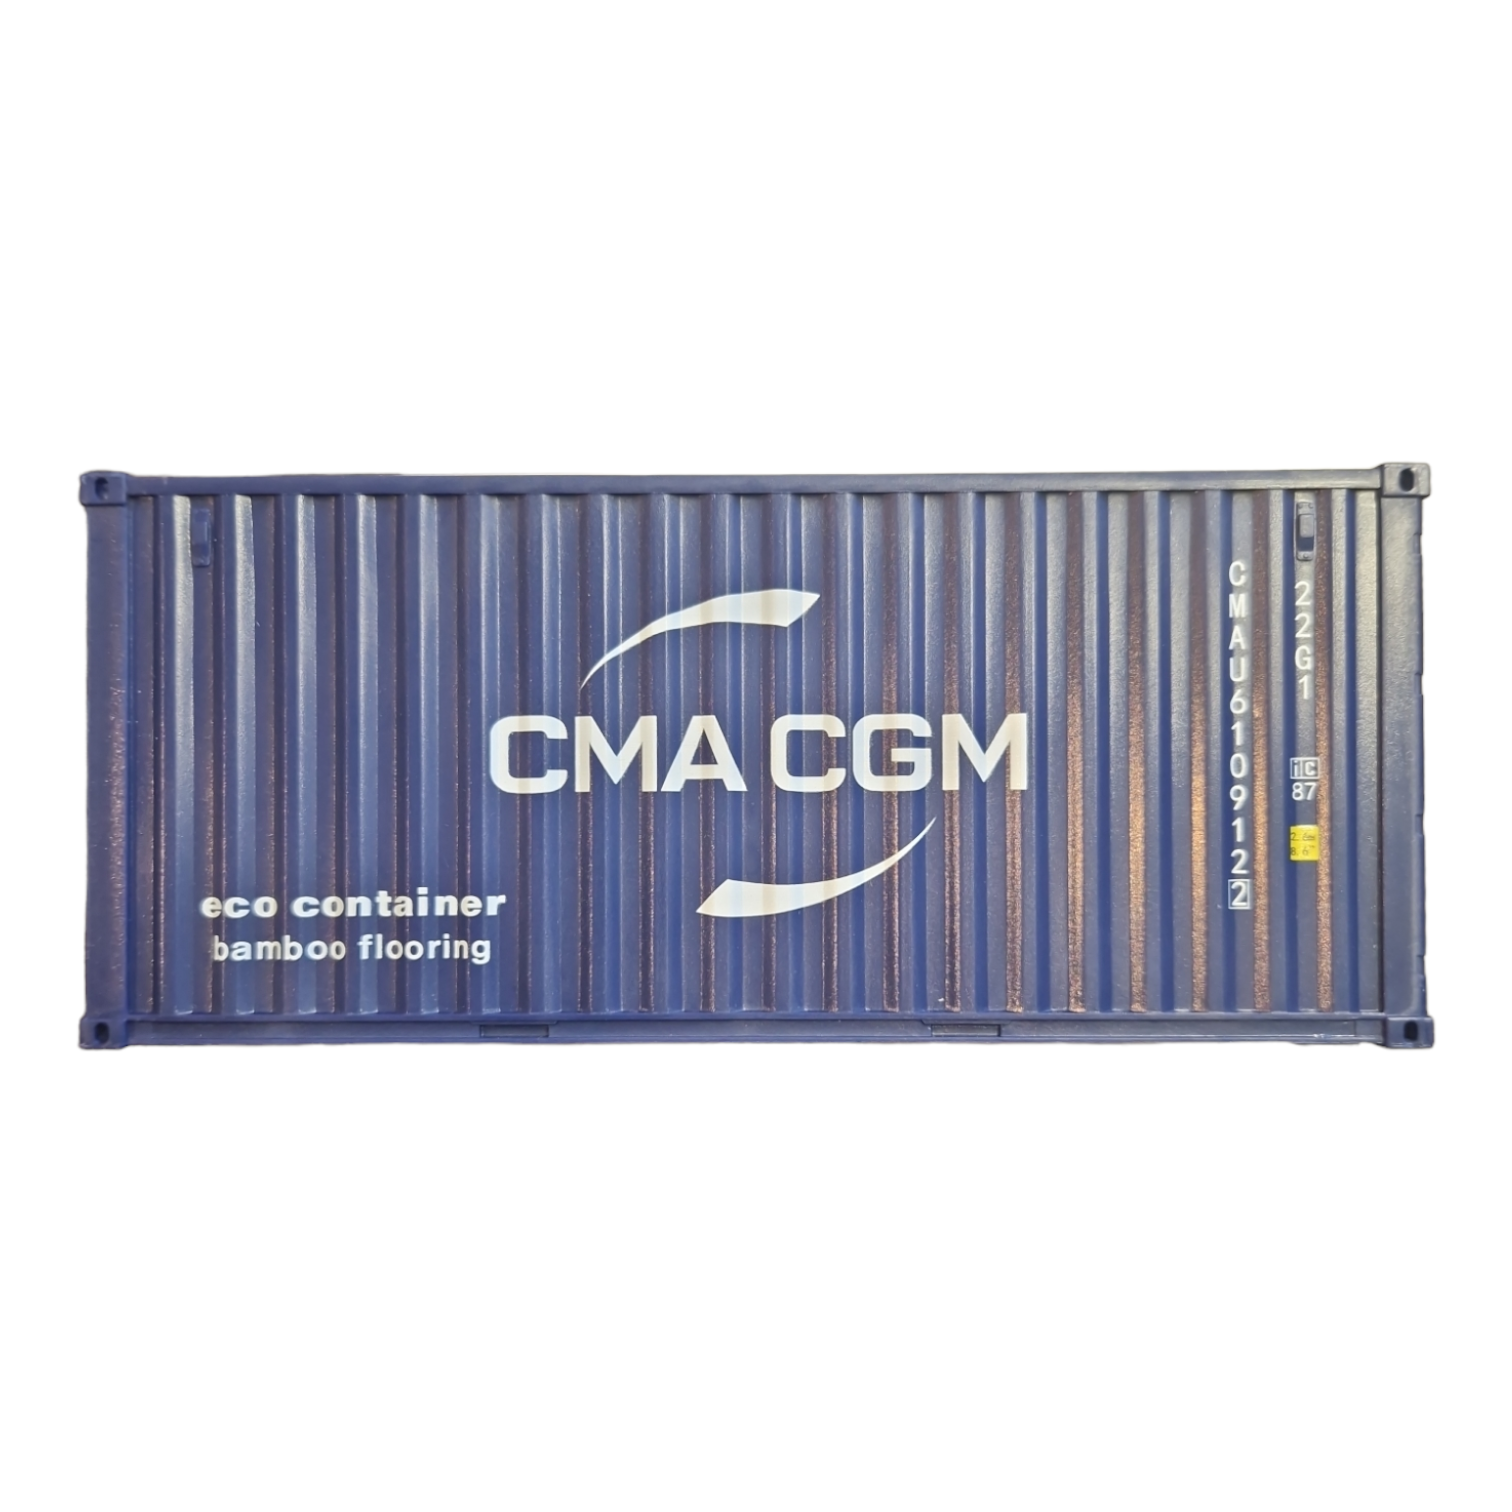 Brush & Card Pod Aufbewahrungsbox Toolbox Container CMA CGM